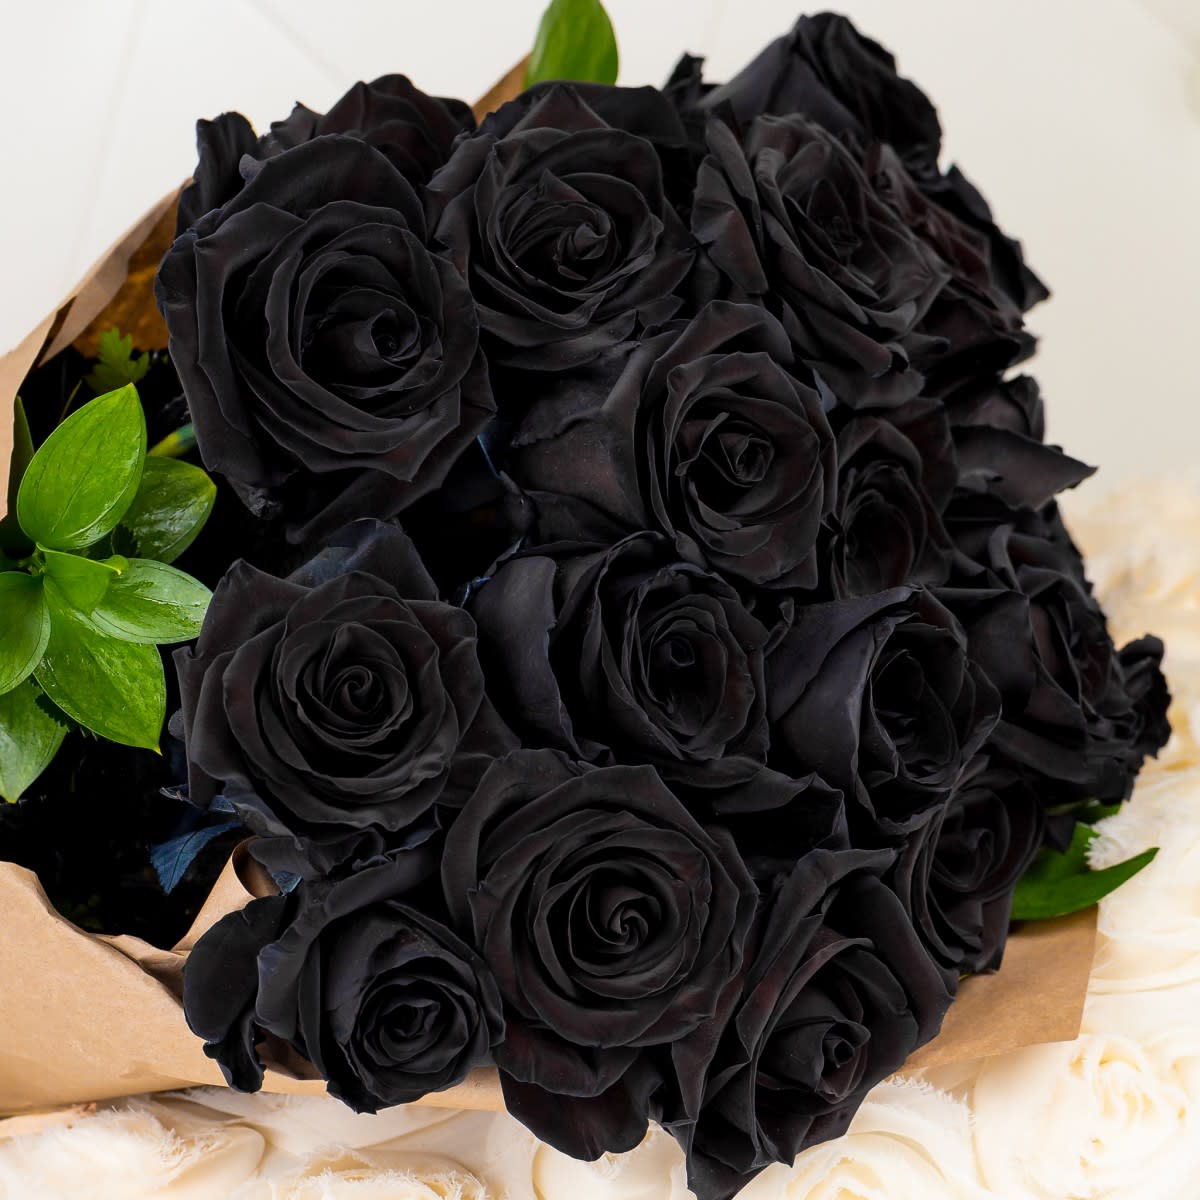 Hoa hồng đen nói lên sự cô độc